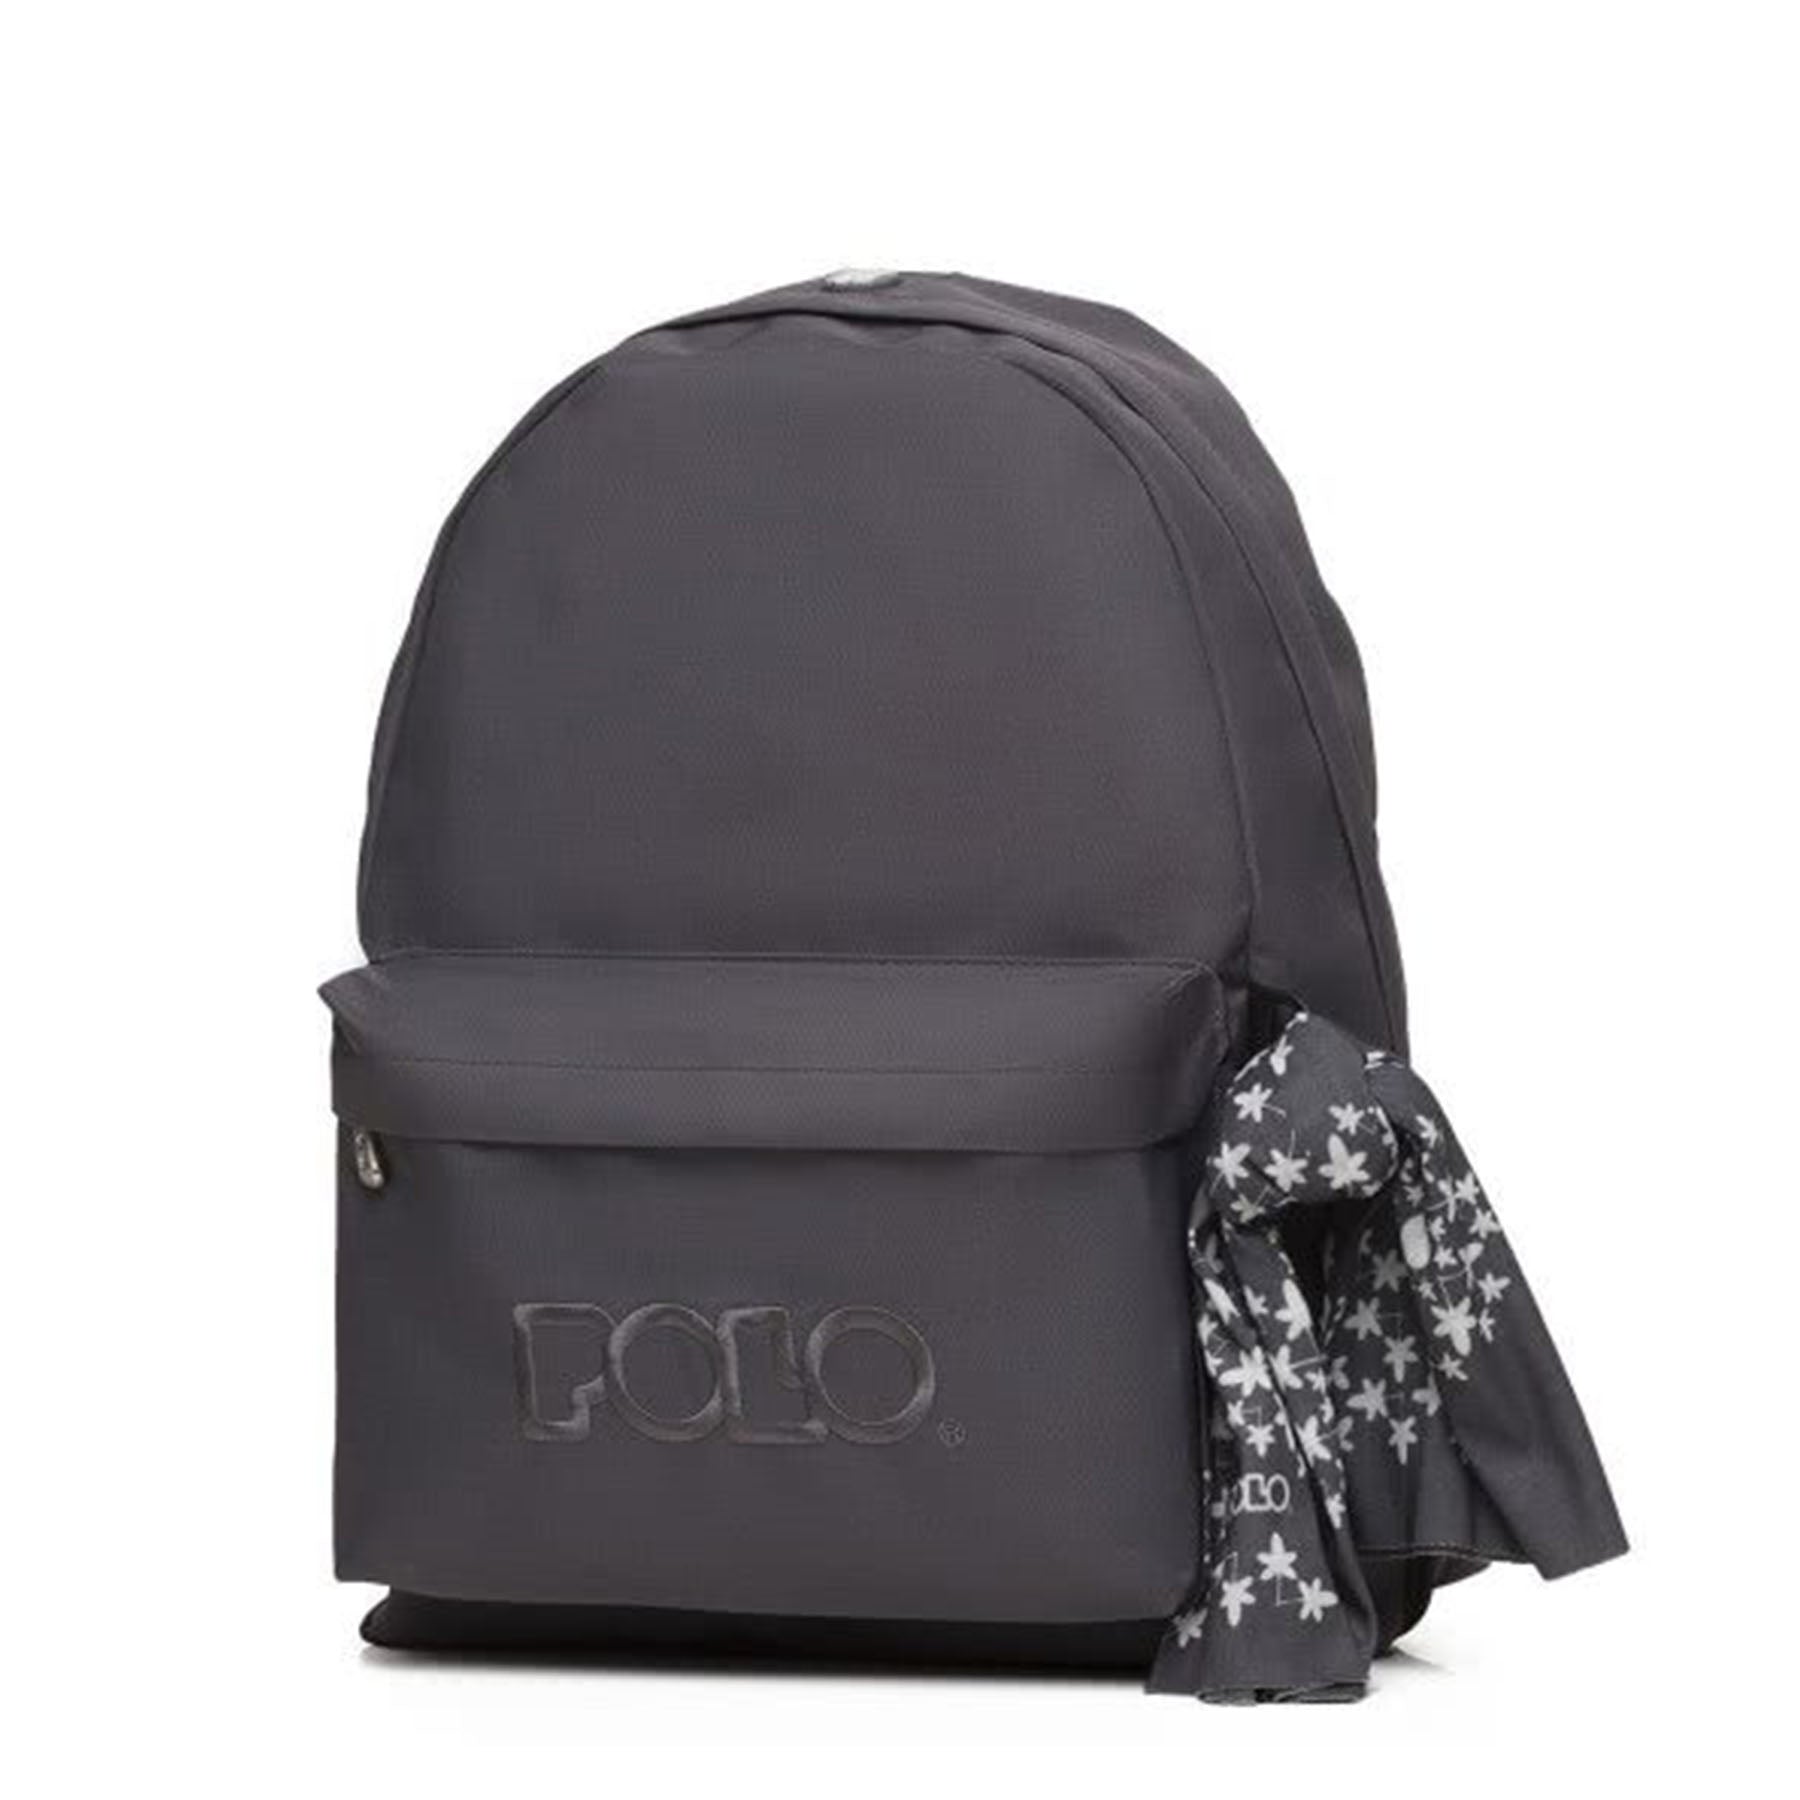 school polo bag